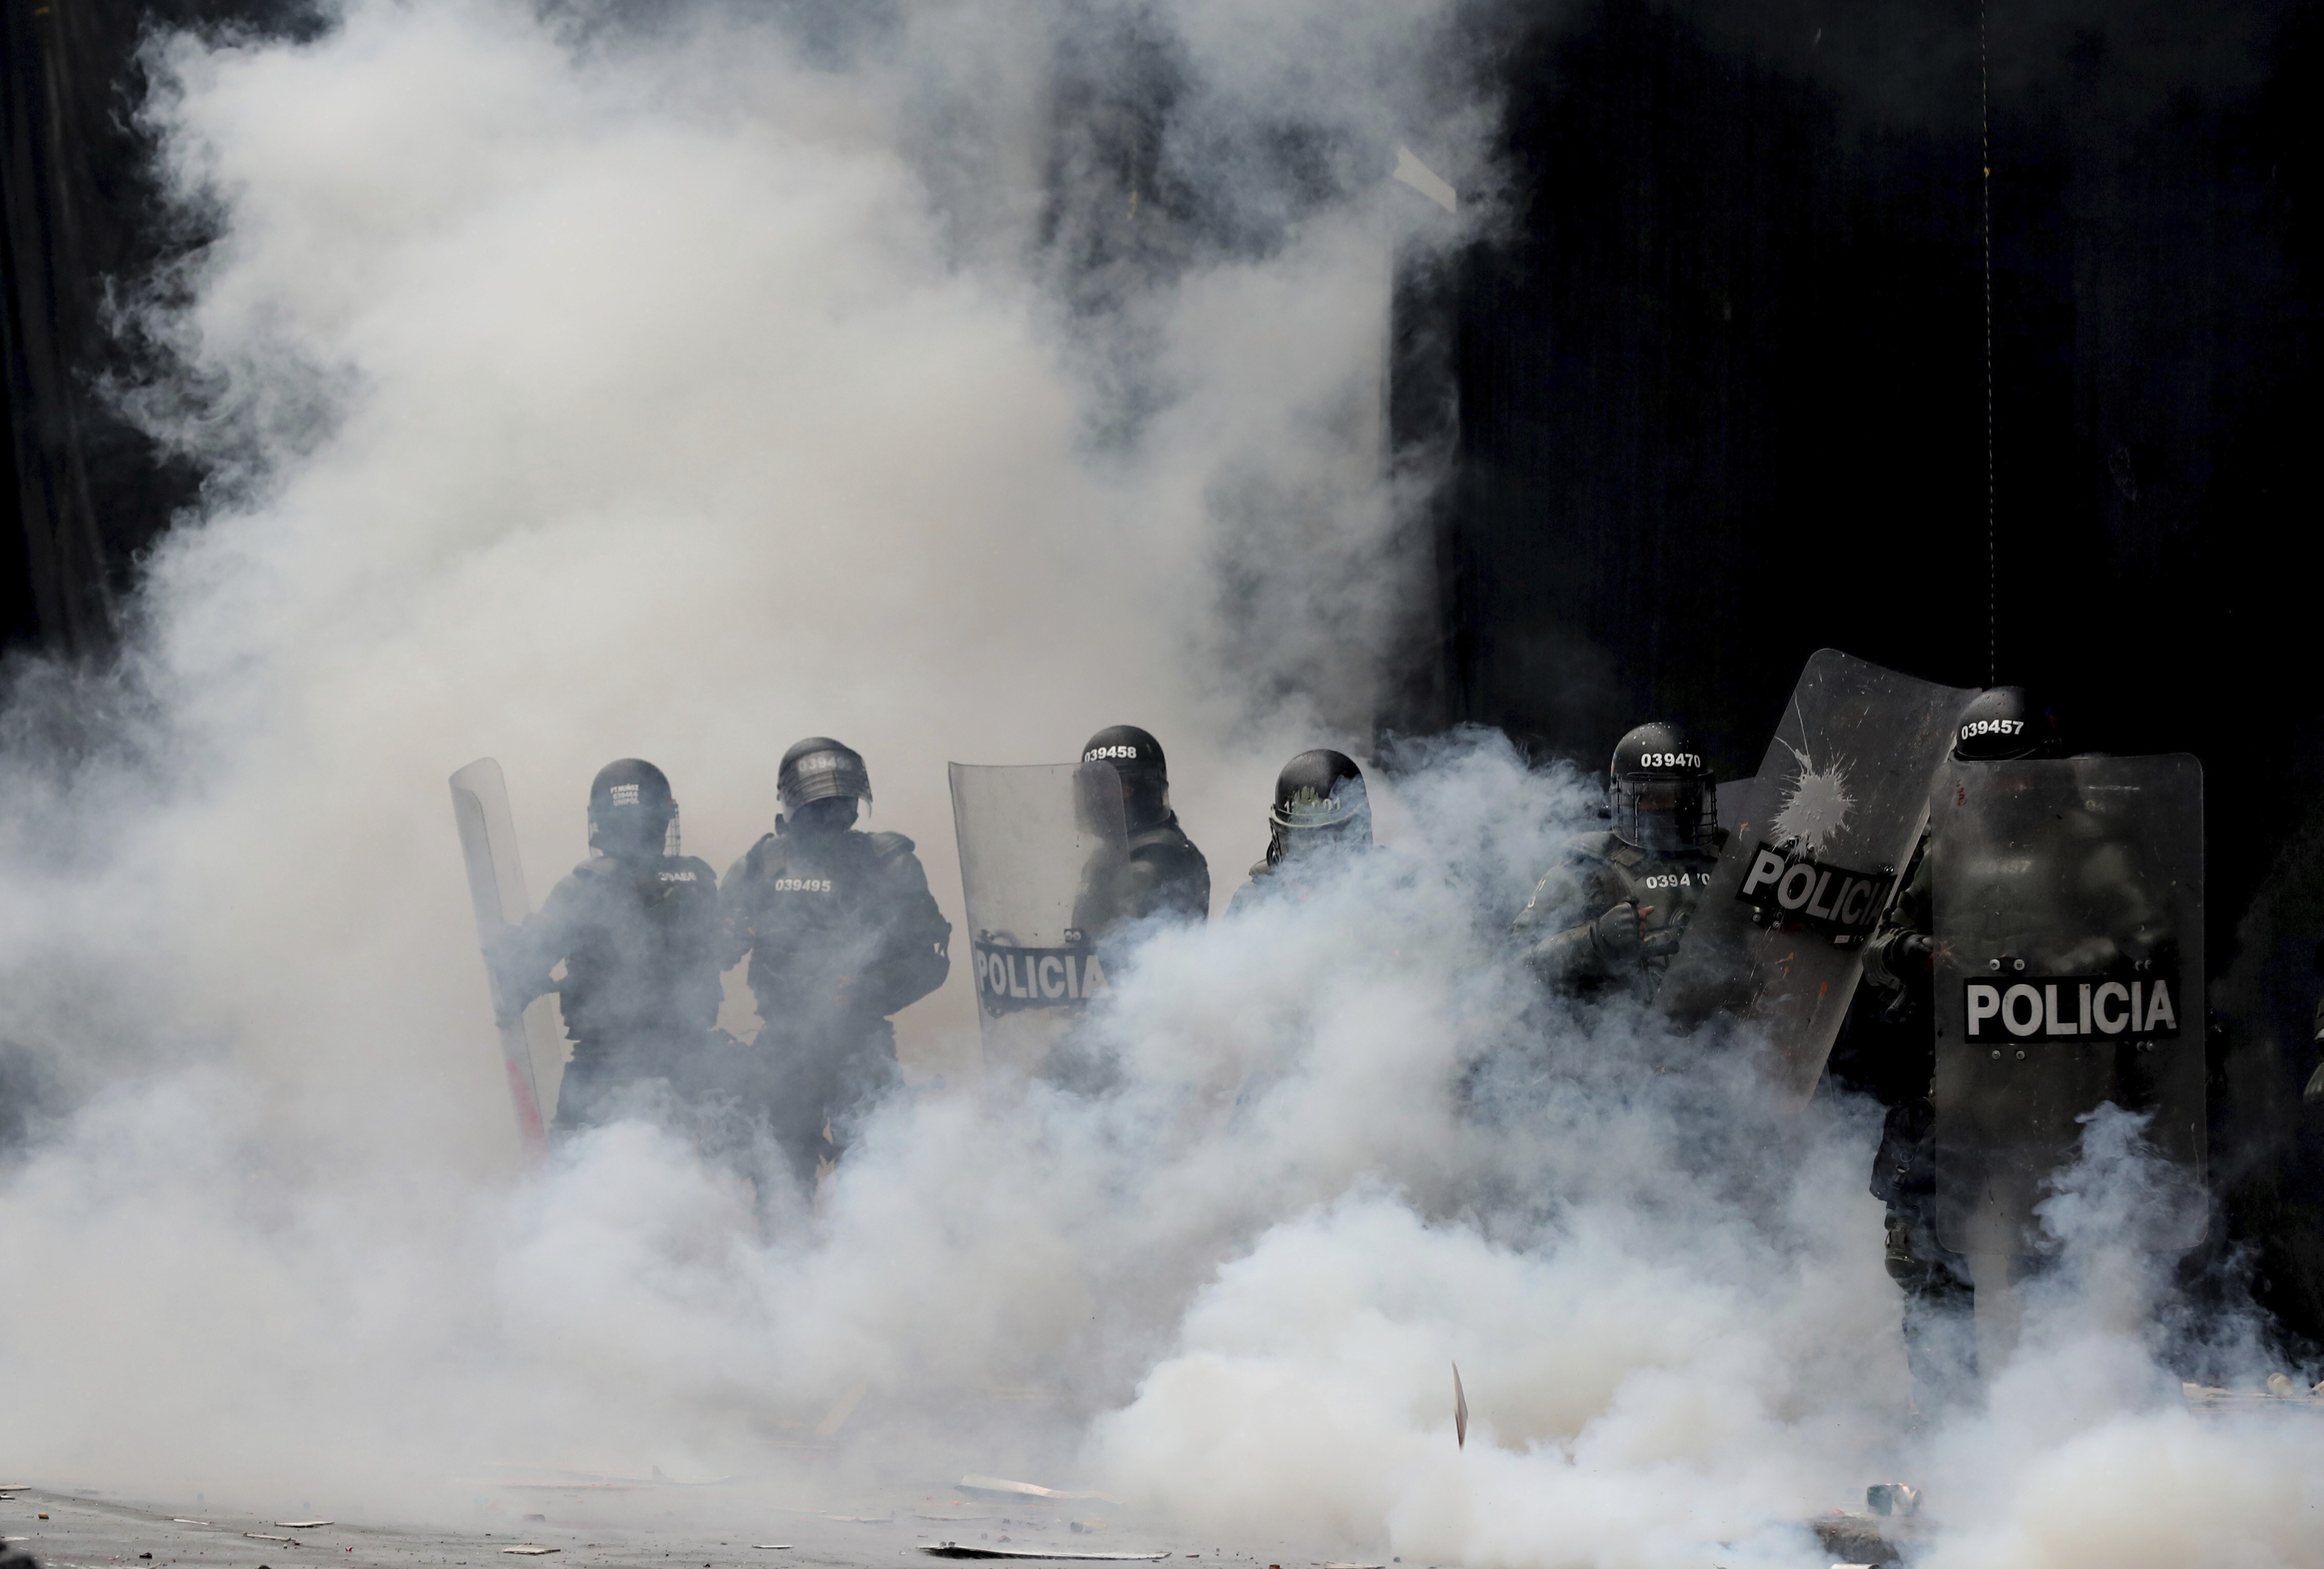 Varios policías se ven inmersos en una nube de gas lacrimógeno tras dispersar a manifestantes en la Plaza Bolívar, en el centro de Bogotá, Colombia, el jueves 21 de noviembre de 2019. (AP Foto/Fernando Vergara)